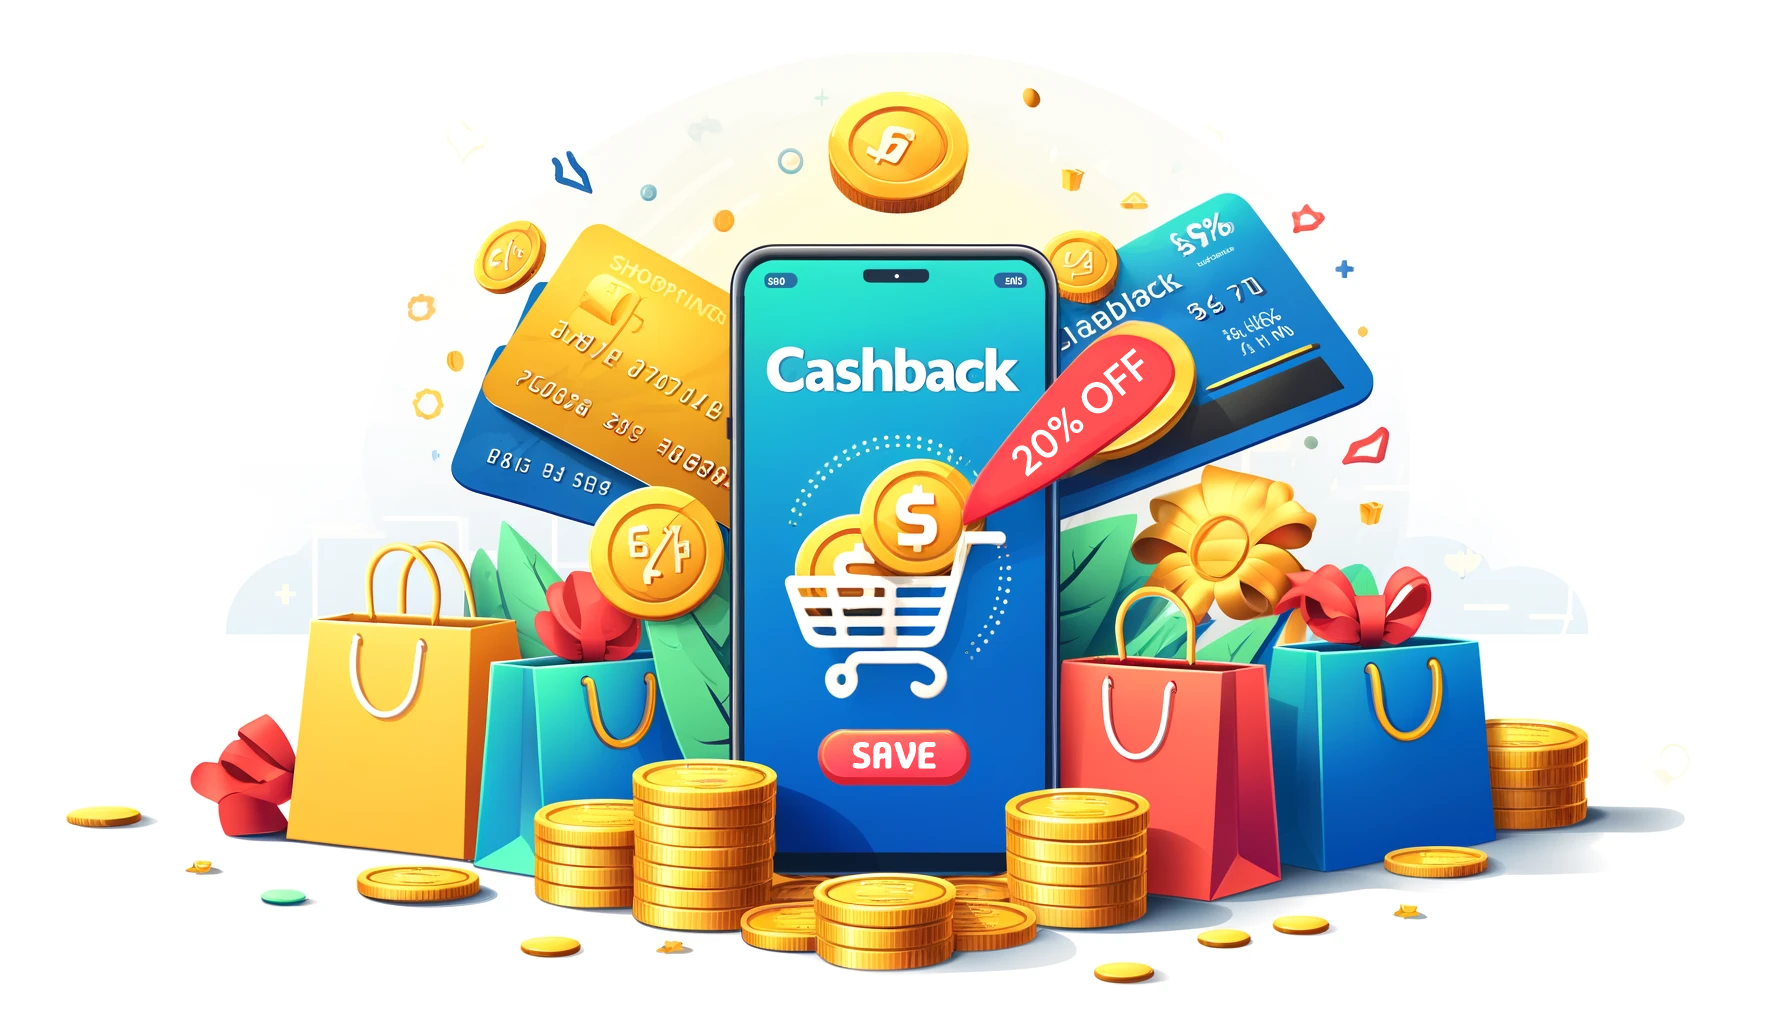 Un smartphone affichant "Cashback" en titre d'écran et entouré de sacs de shoping et de cartes de crédits illustrant de nombreuses réductions.